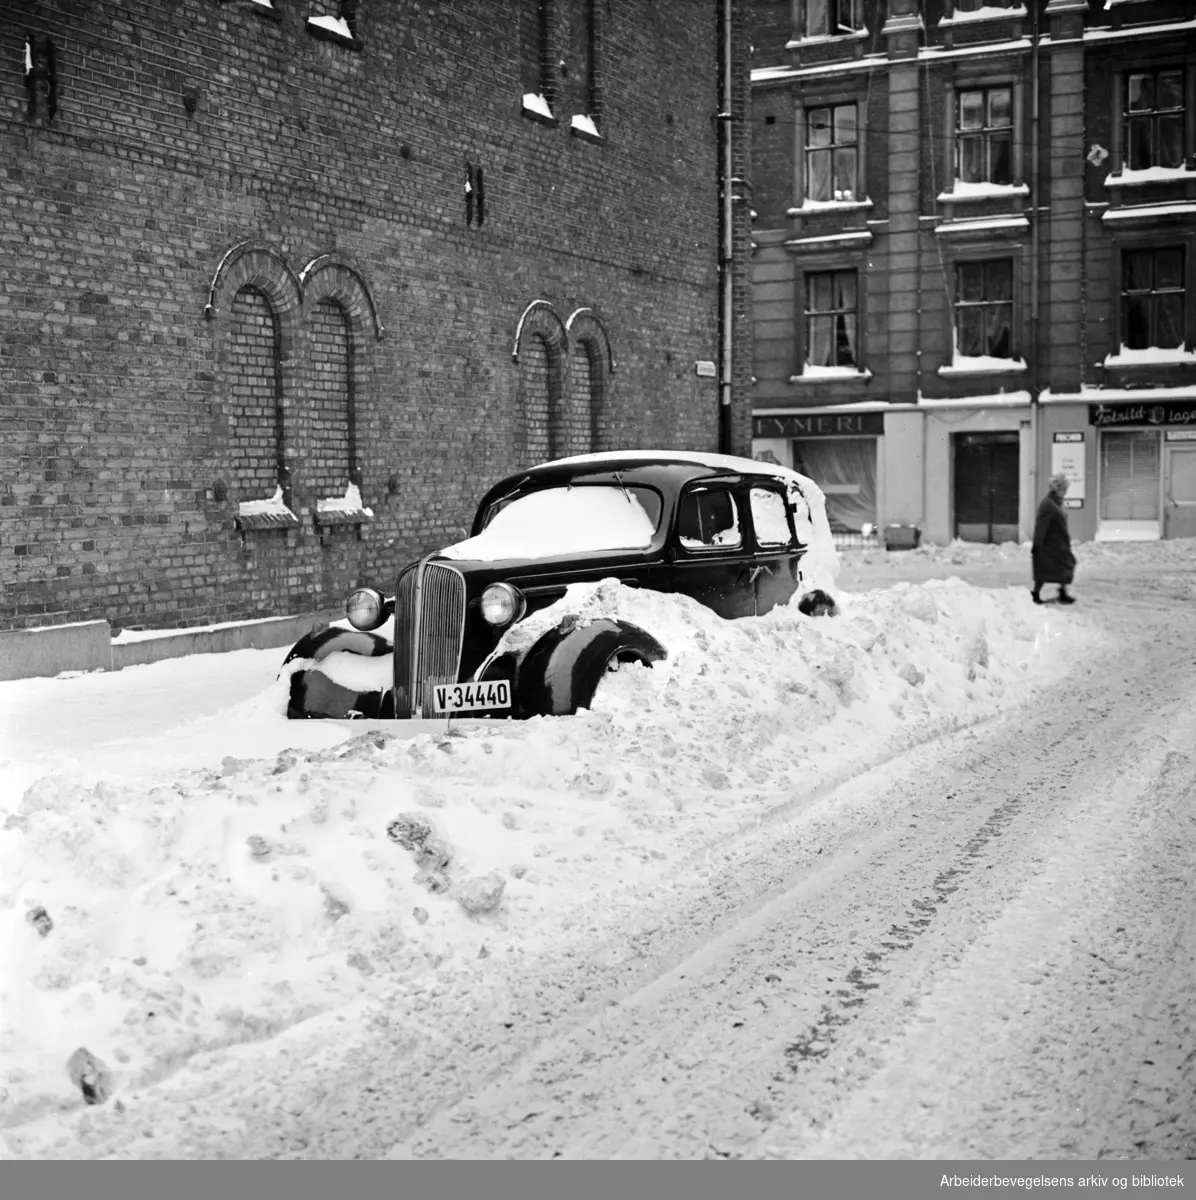 Parkert bil i snøfonn. Dalsbergstien, sett mot Pilestredet. Desember 1962.